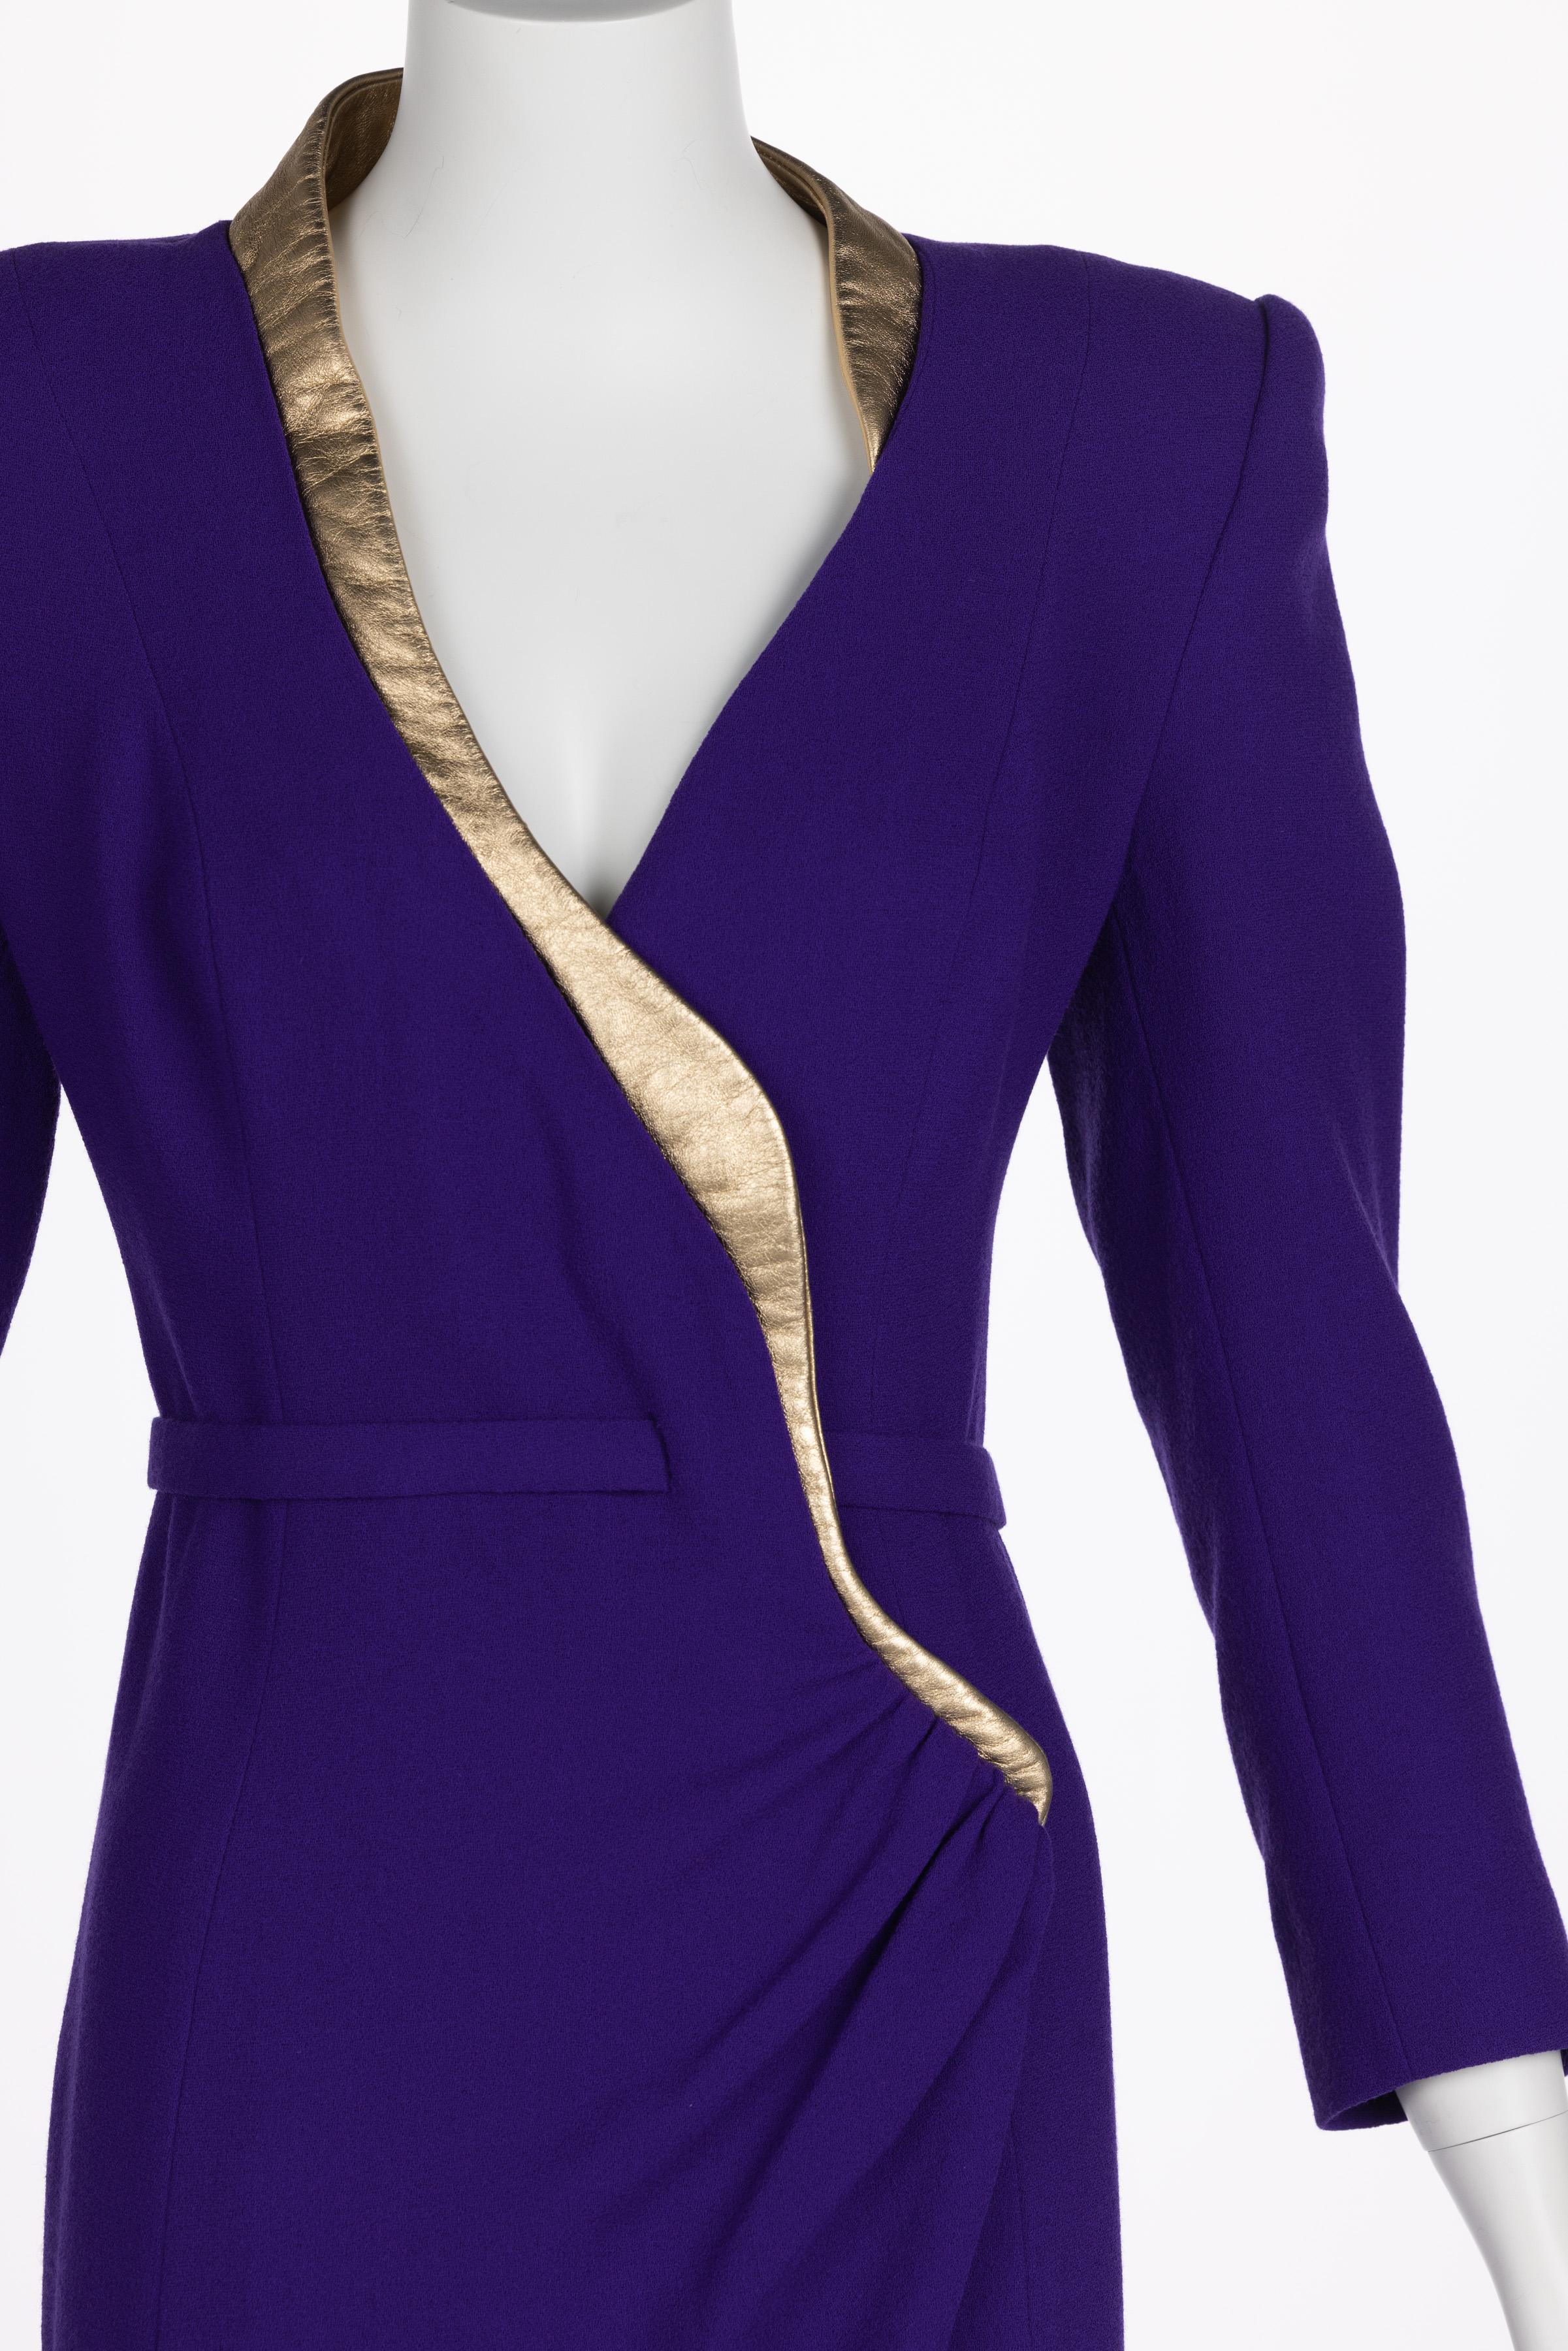 Ronald Van der kemp Haute Couture Dress, 2018 For Sale 4